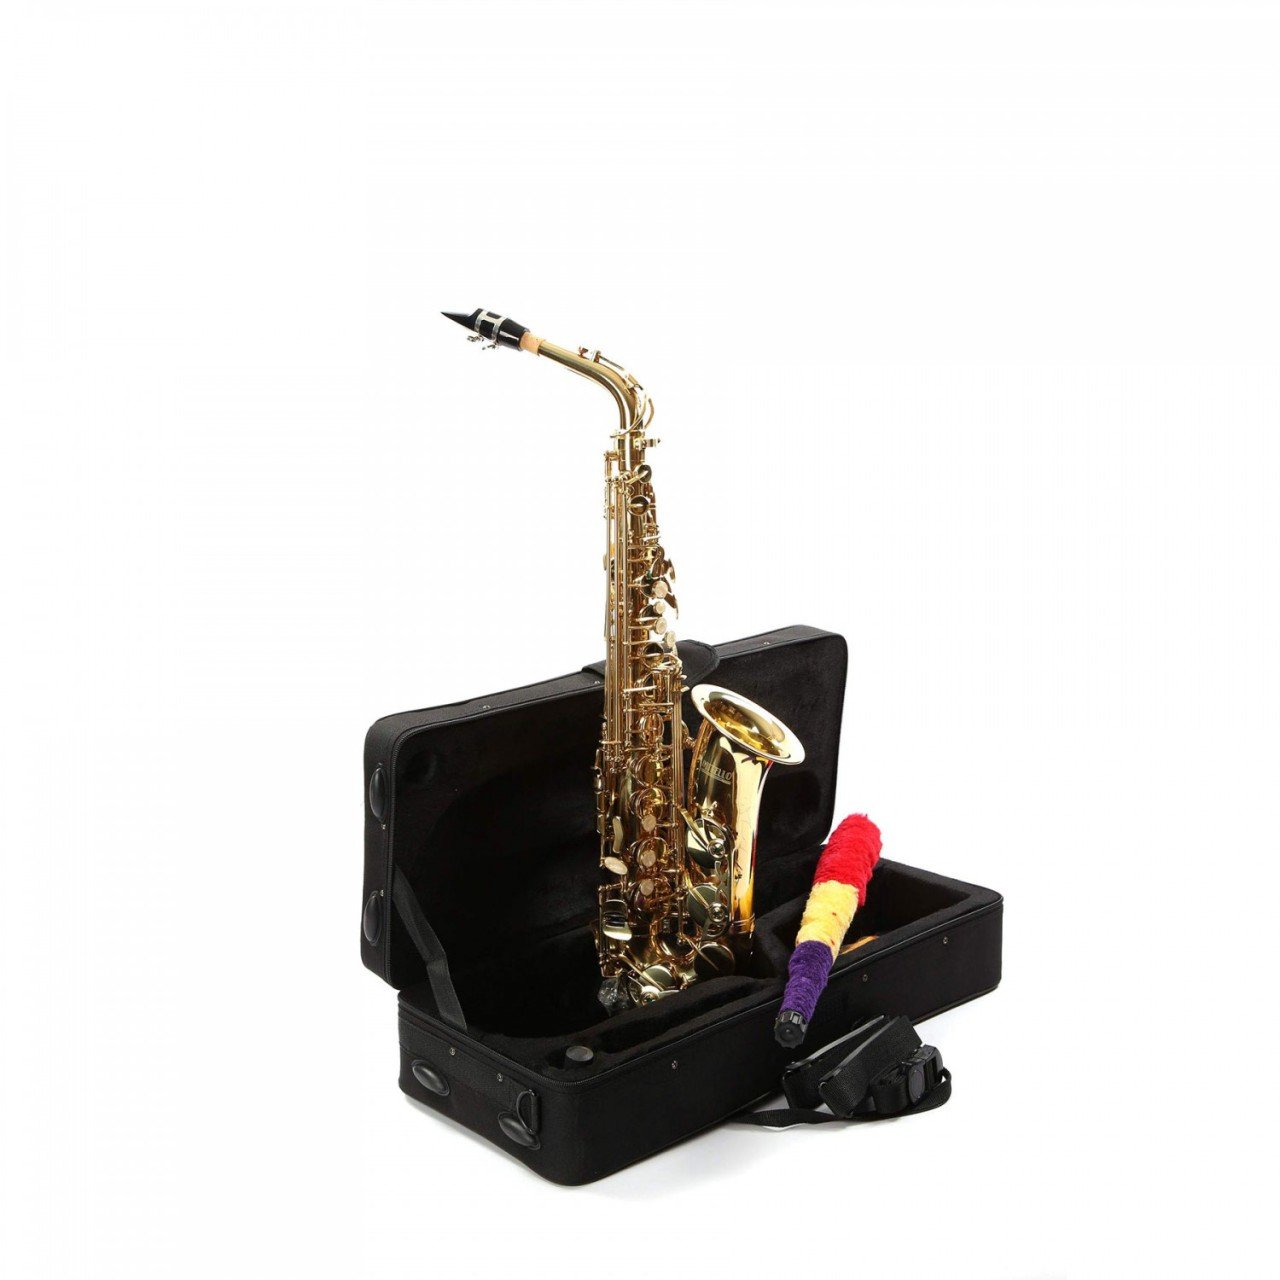 Mitello Alto Sax Saxophone